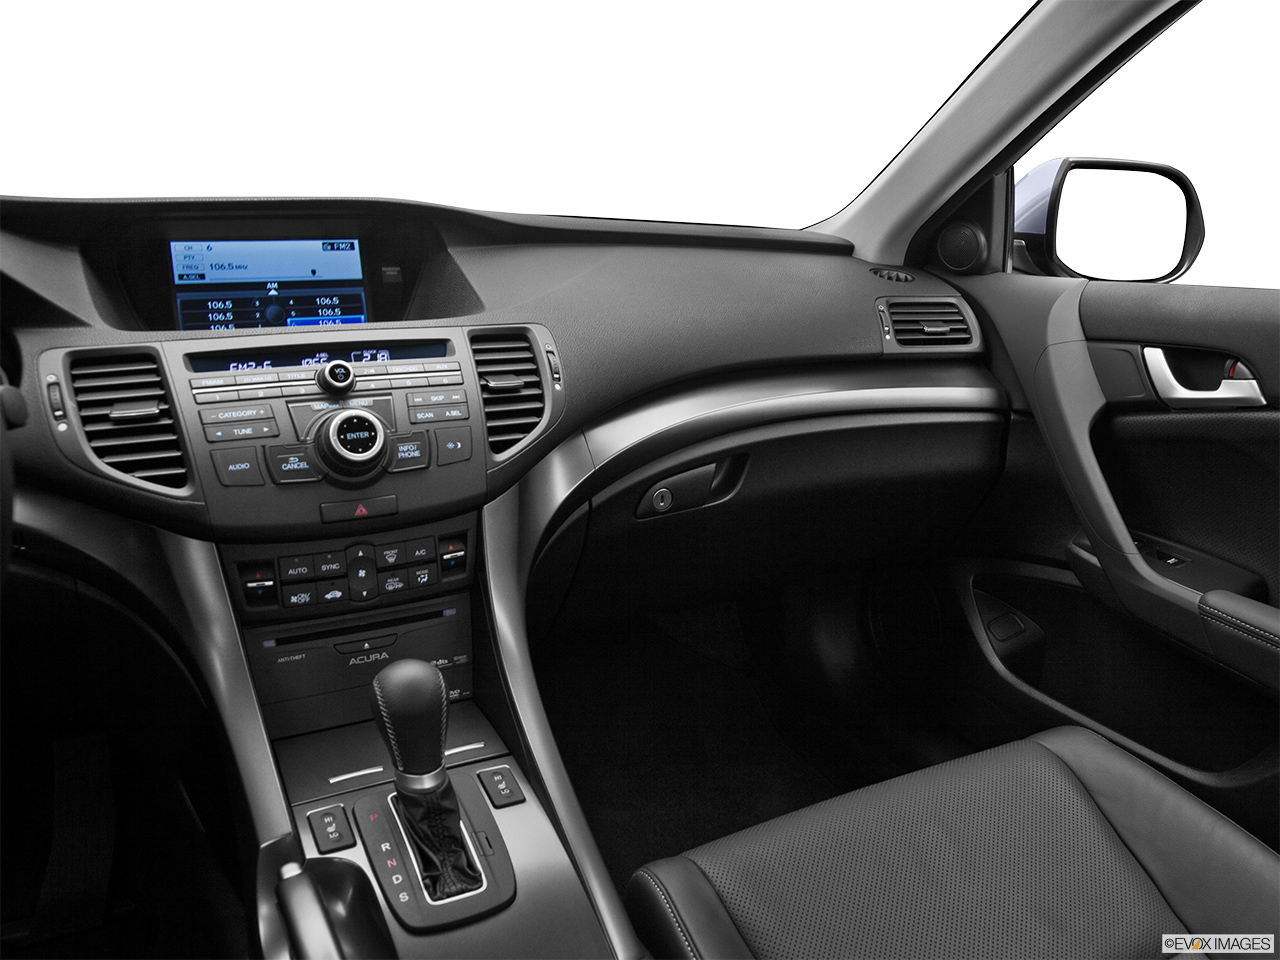 2012 Acura TSX V6 Center Console/Passenger Side. 